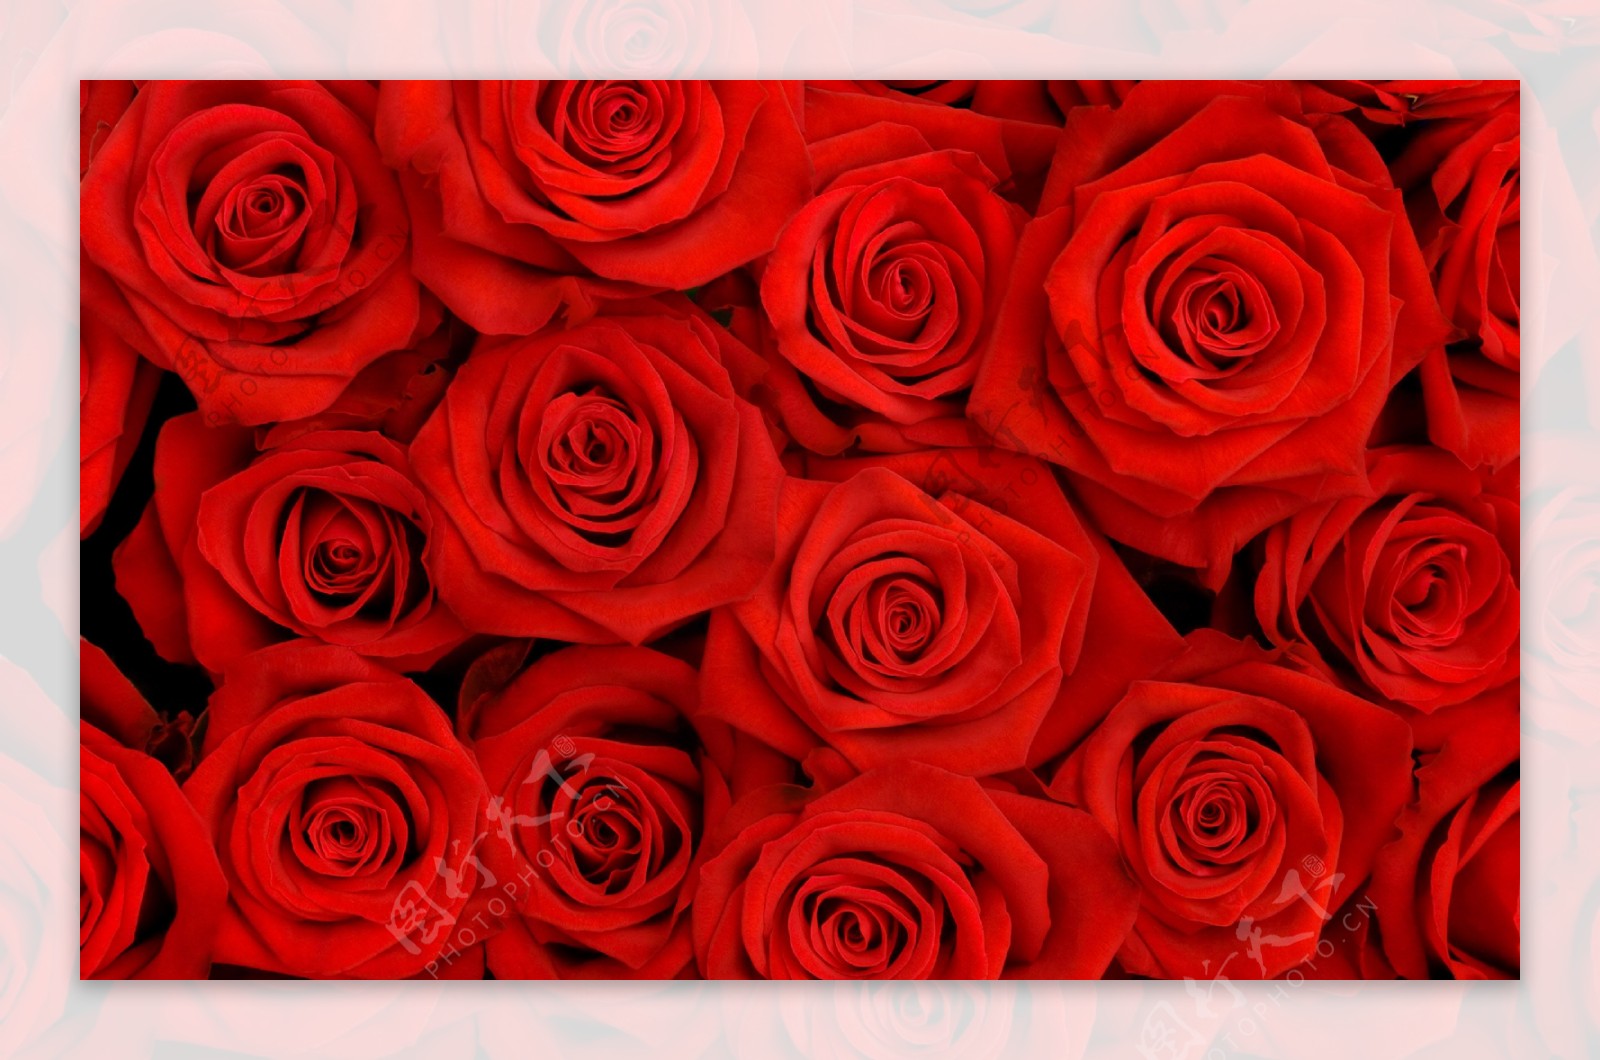 红玫瑰花束